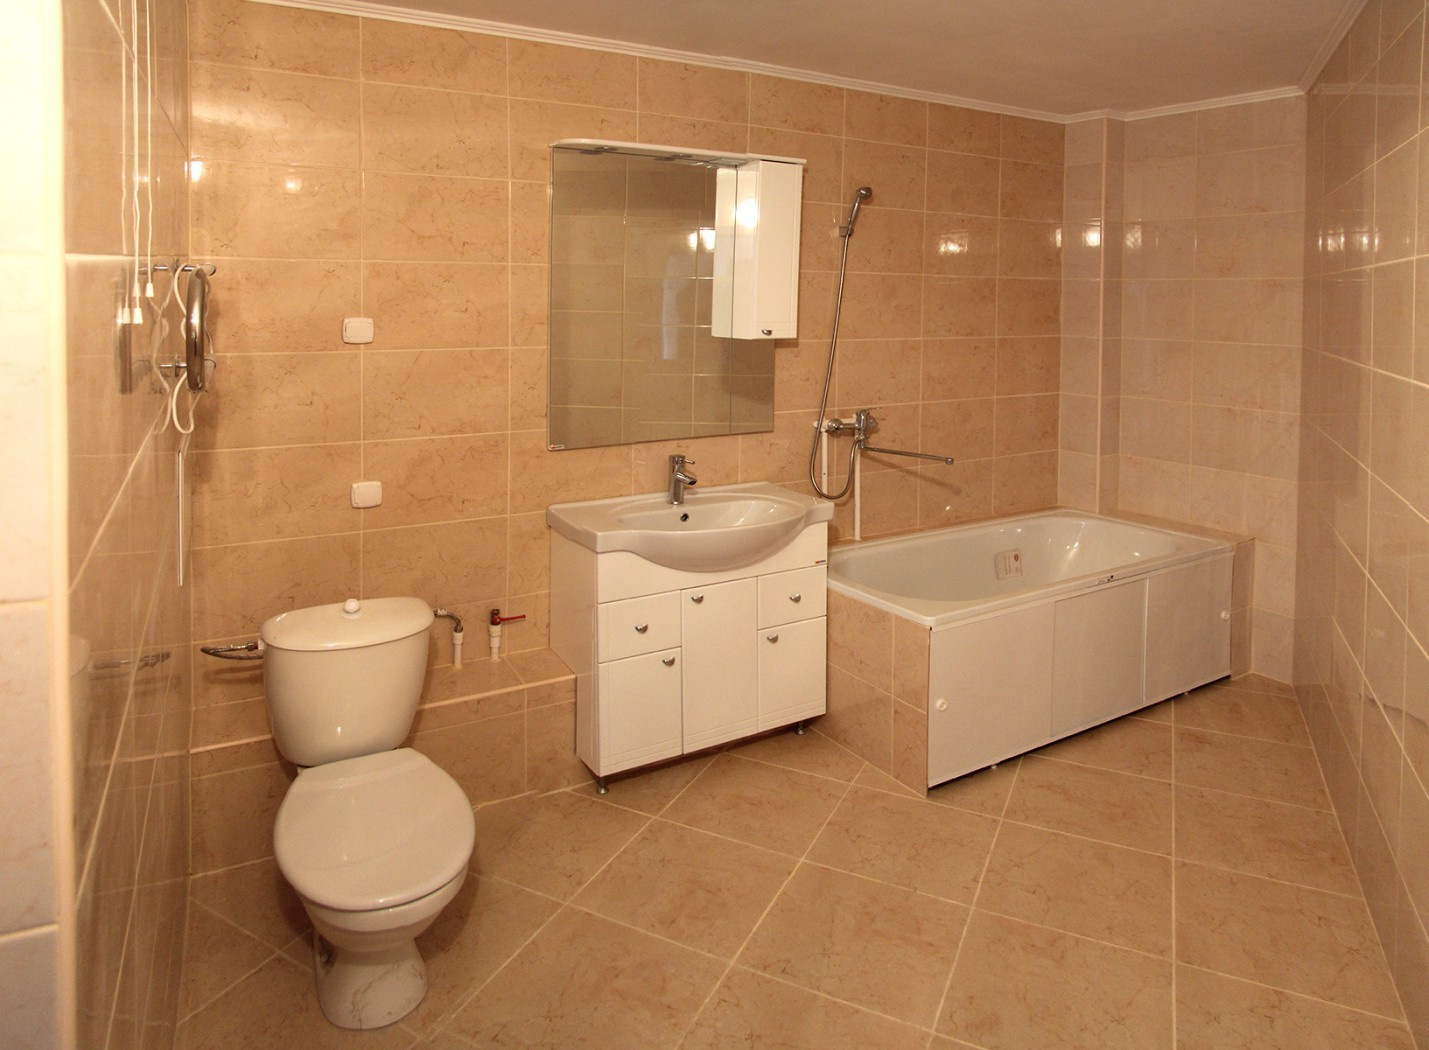 Сделаны даже санузлы: кроме ванны и унитаза установлена раковина, тумбочка и зеркало